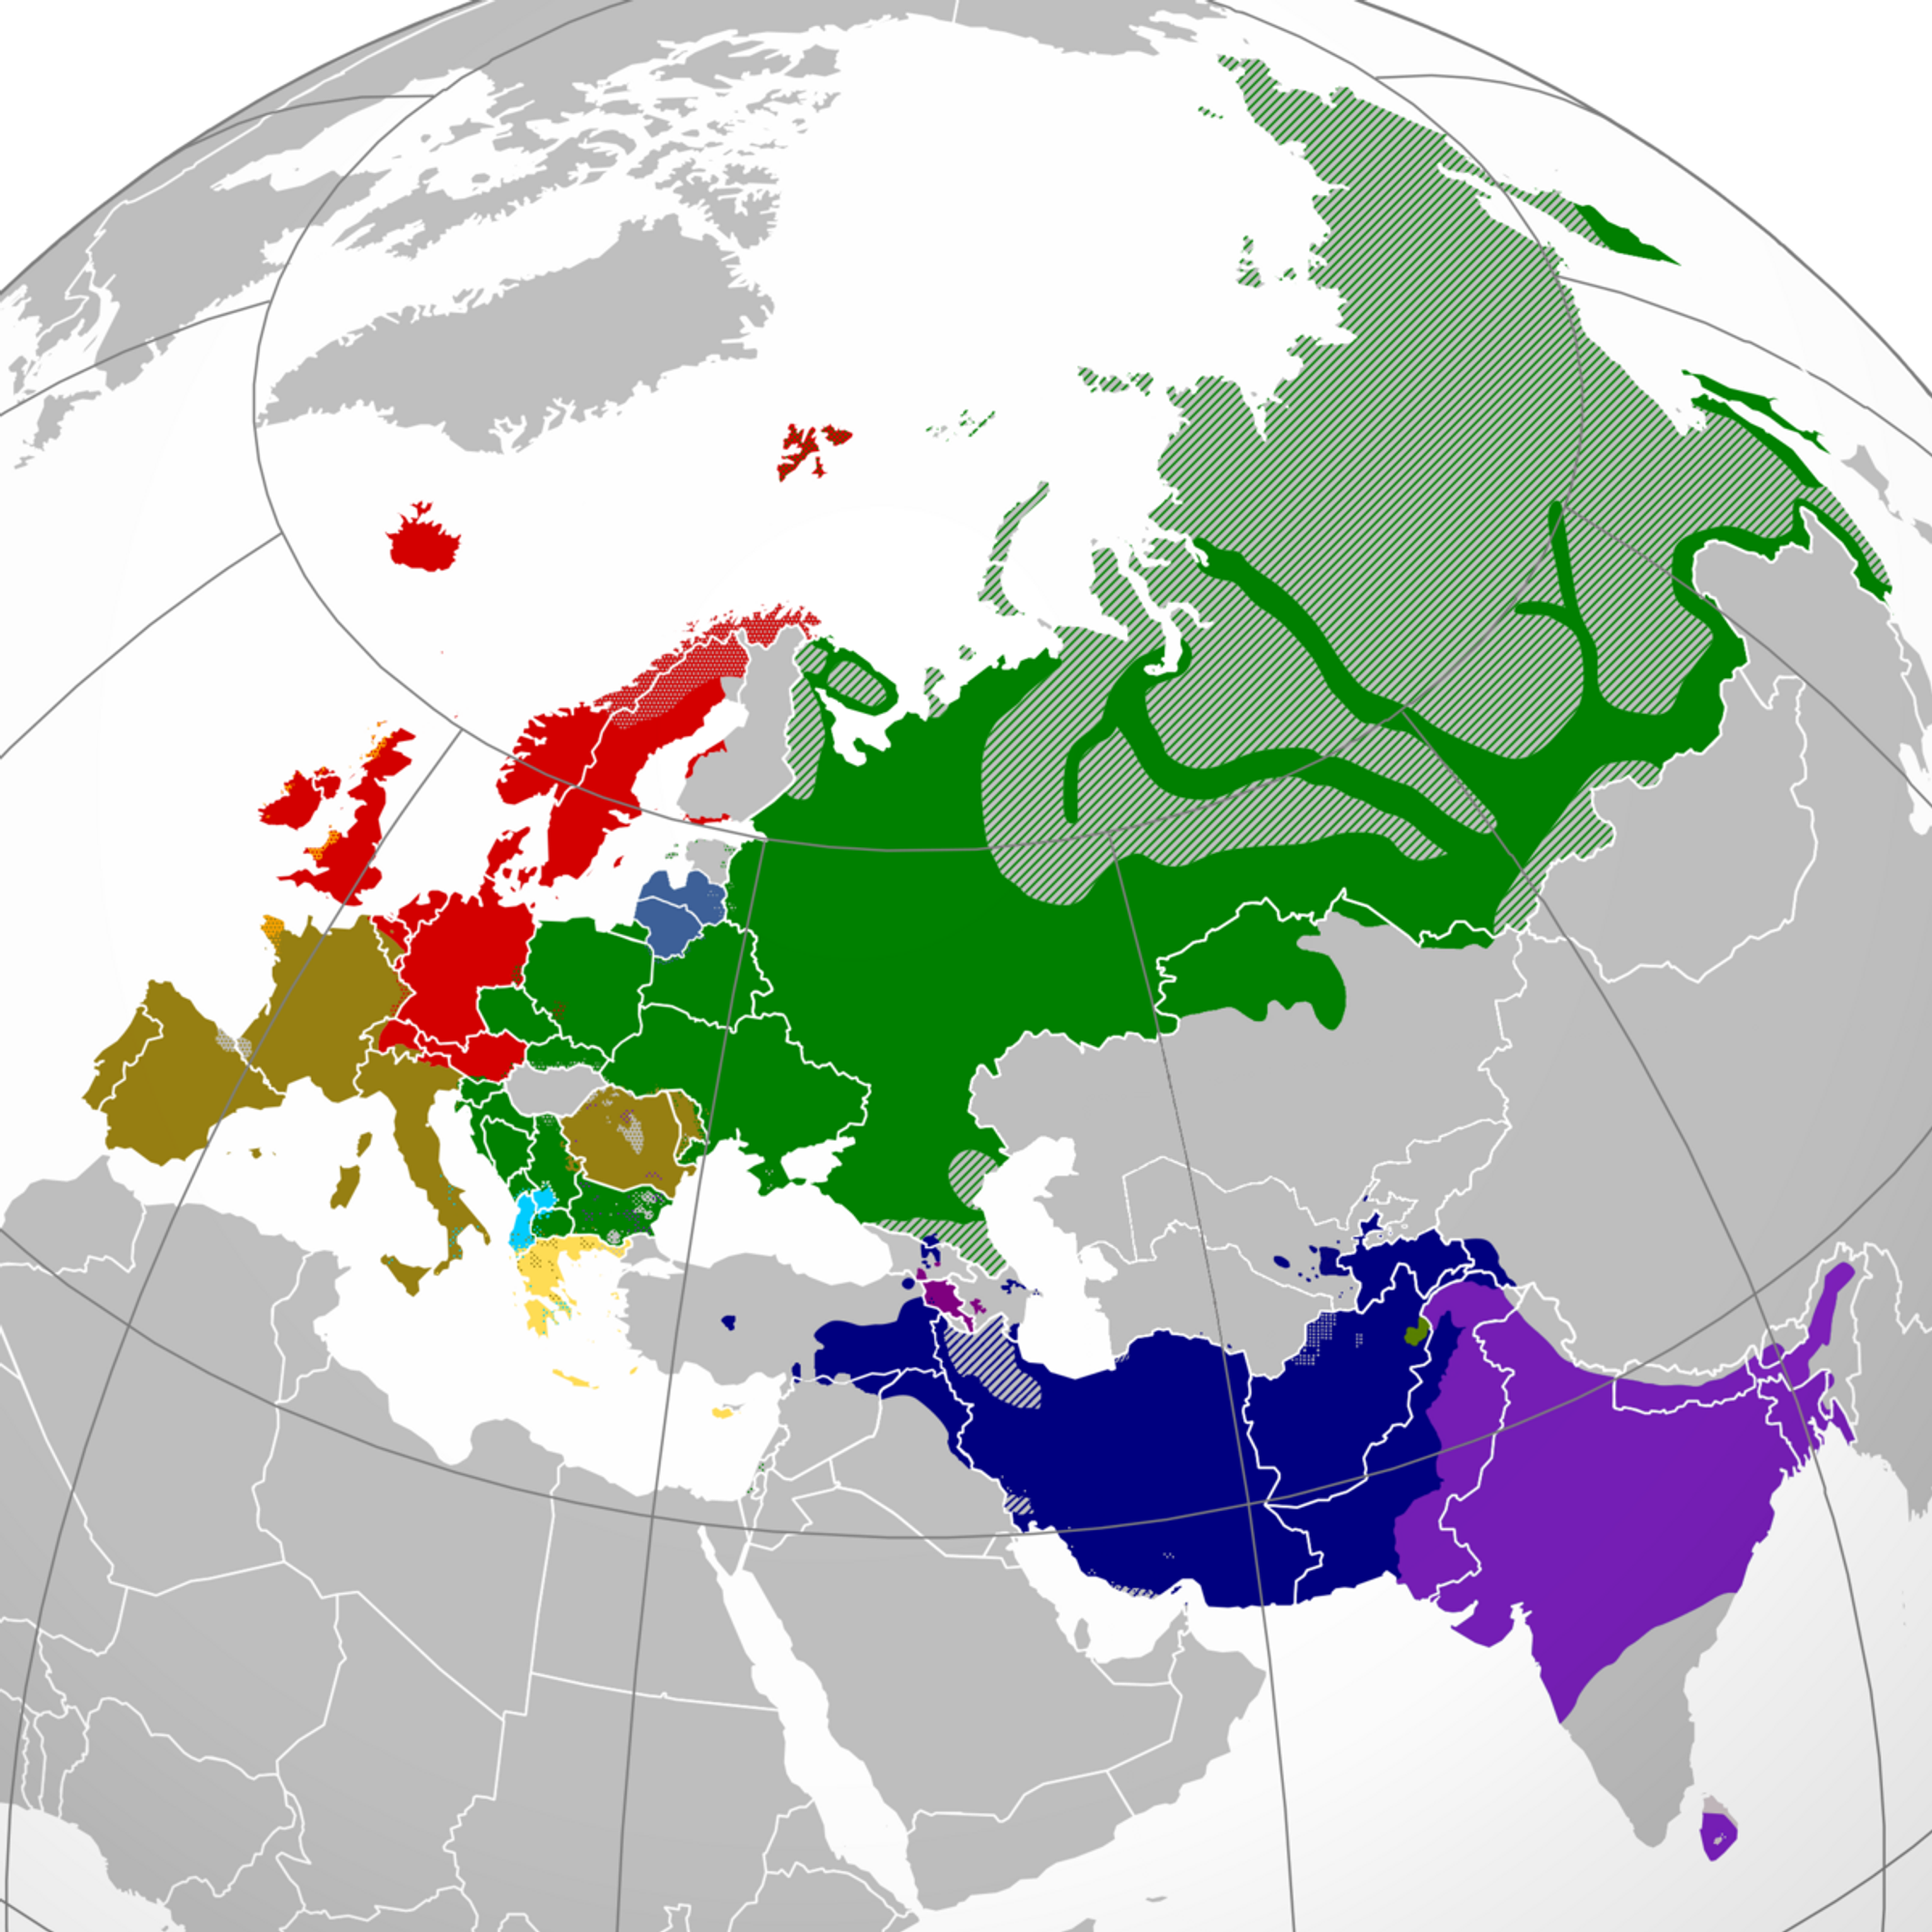 Indo-European languages